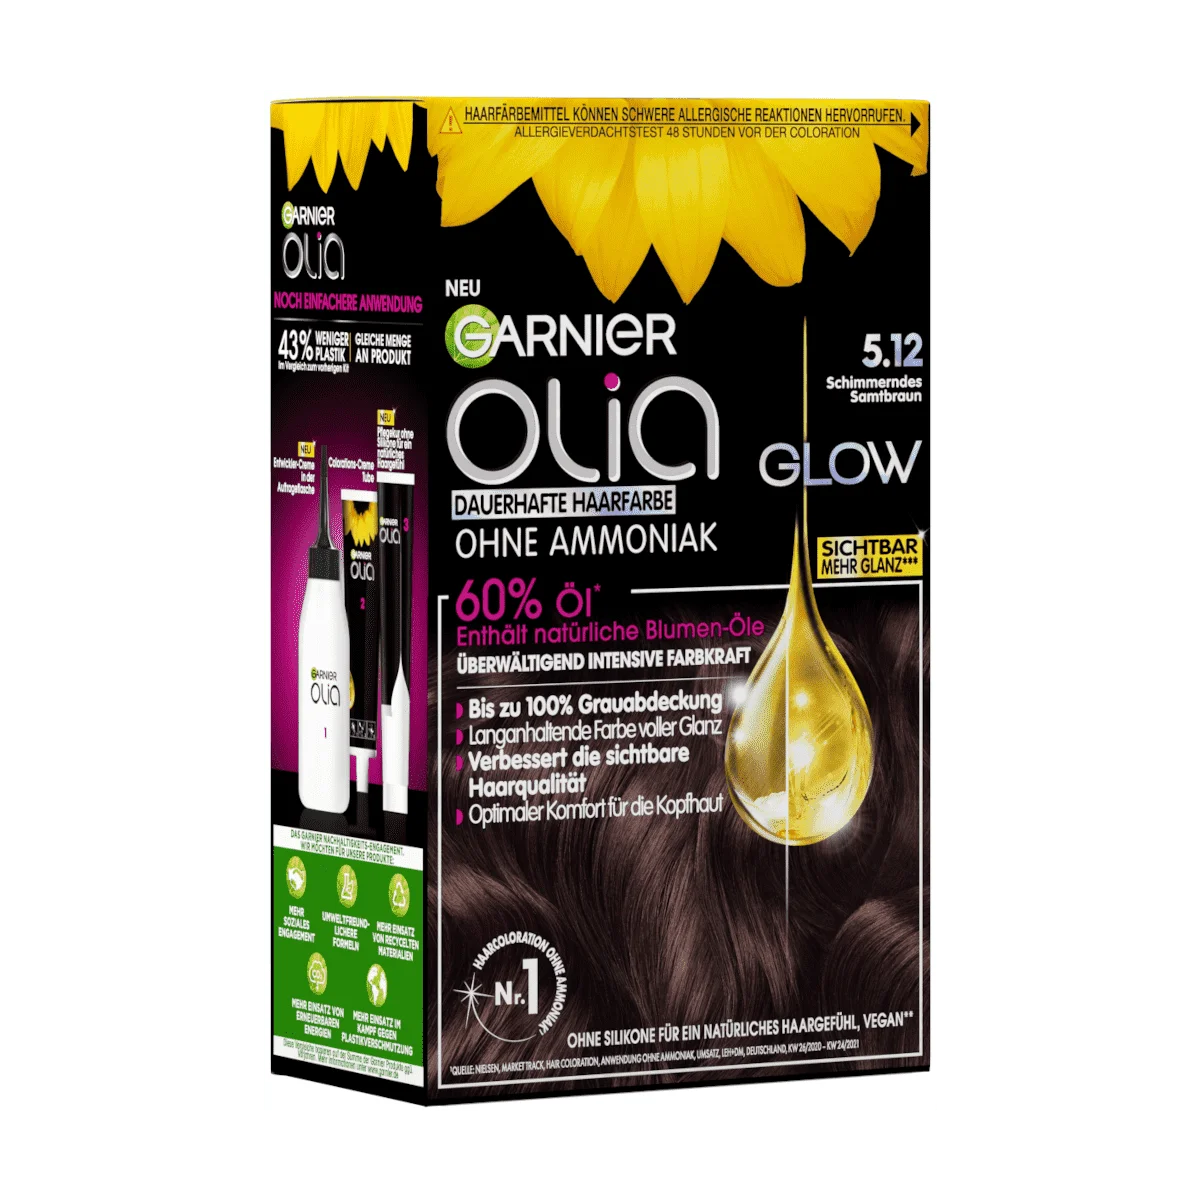 Garnier Olia Glow Haarfarbe 5.12 Schimmerndes Samtbraun, 1 Stk